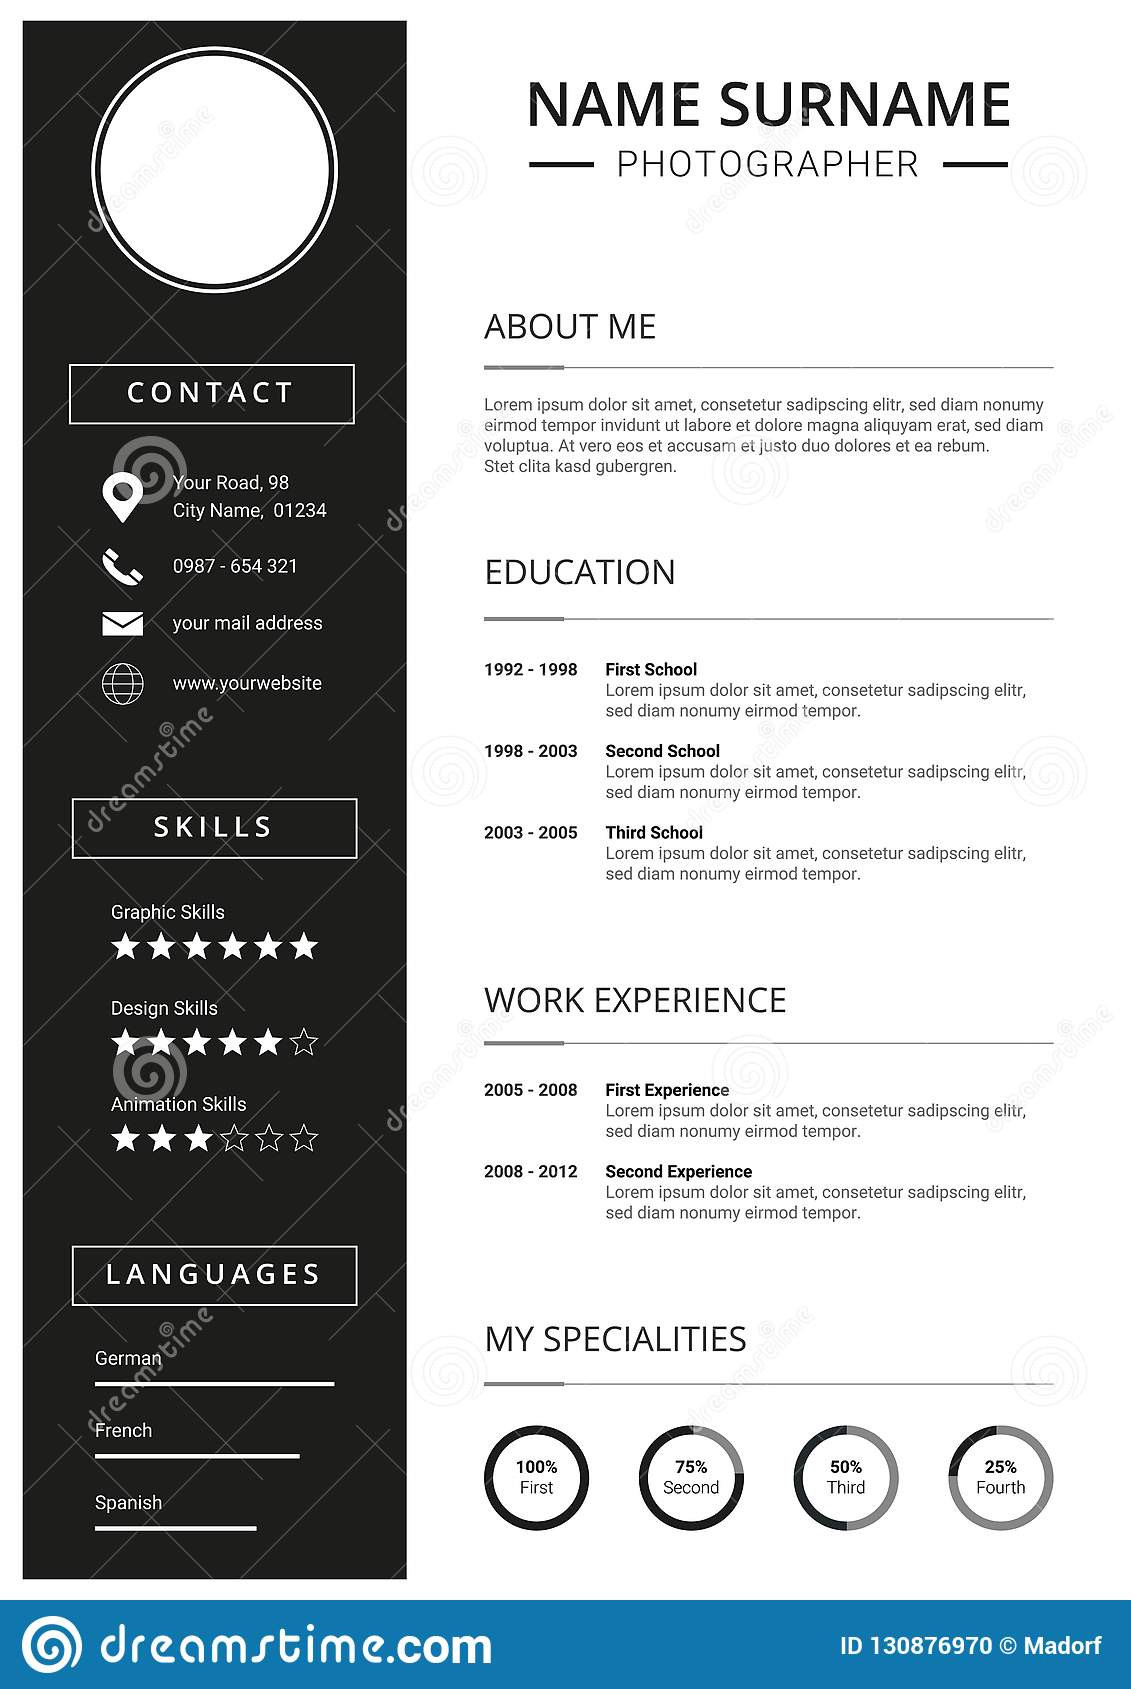 minimal resume cv template clean black white design curriculum vitae icons image